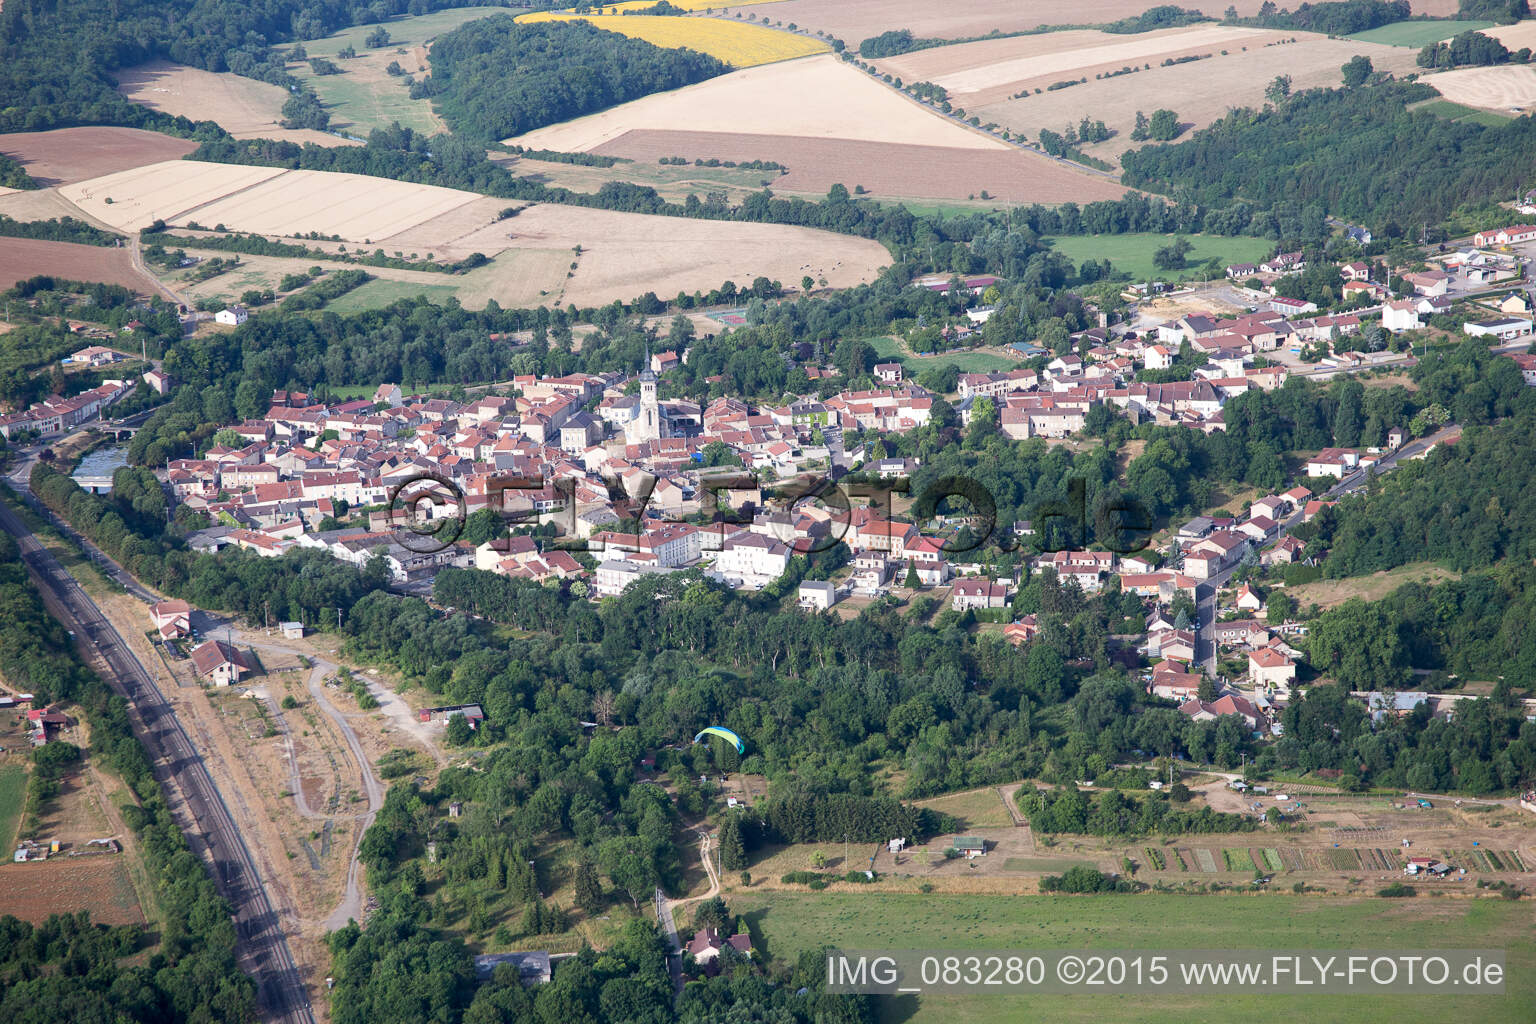 Luftbild von Dorf - Ansicht in Thiaucourt-Regnieville in Grand Est in Thiaucourt-Regniéville im Bundesland Meurthe-et-Moselle, Frankreich